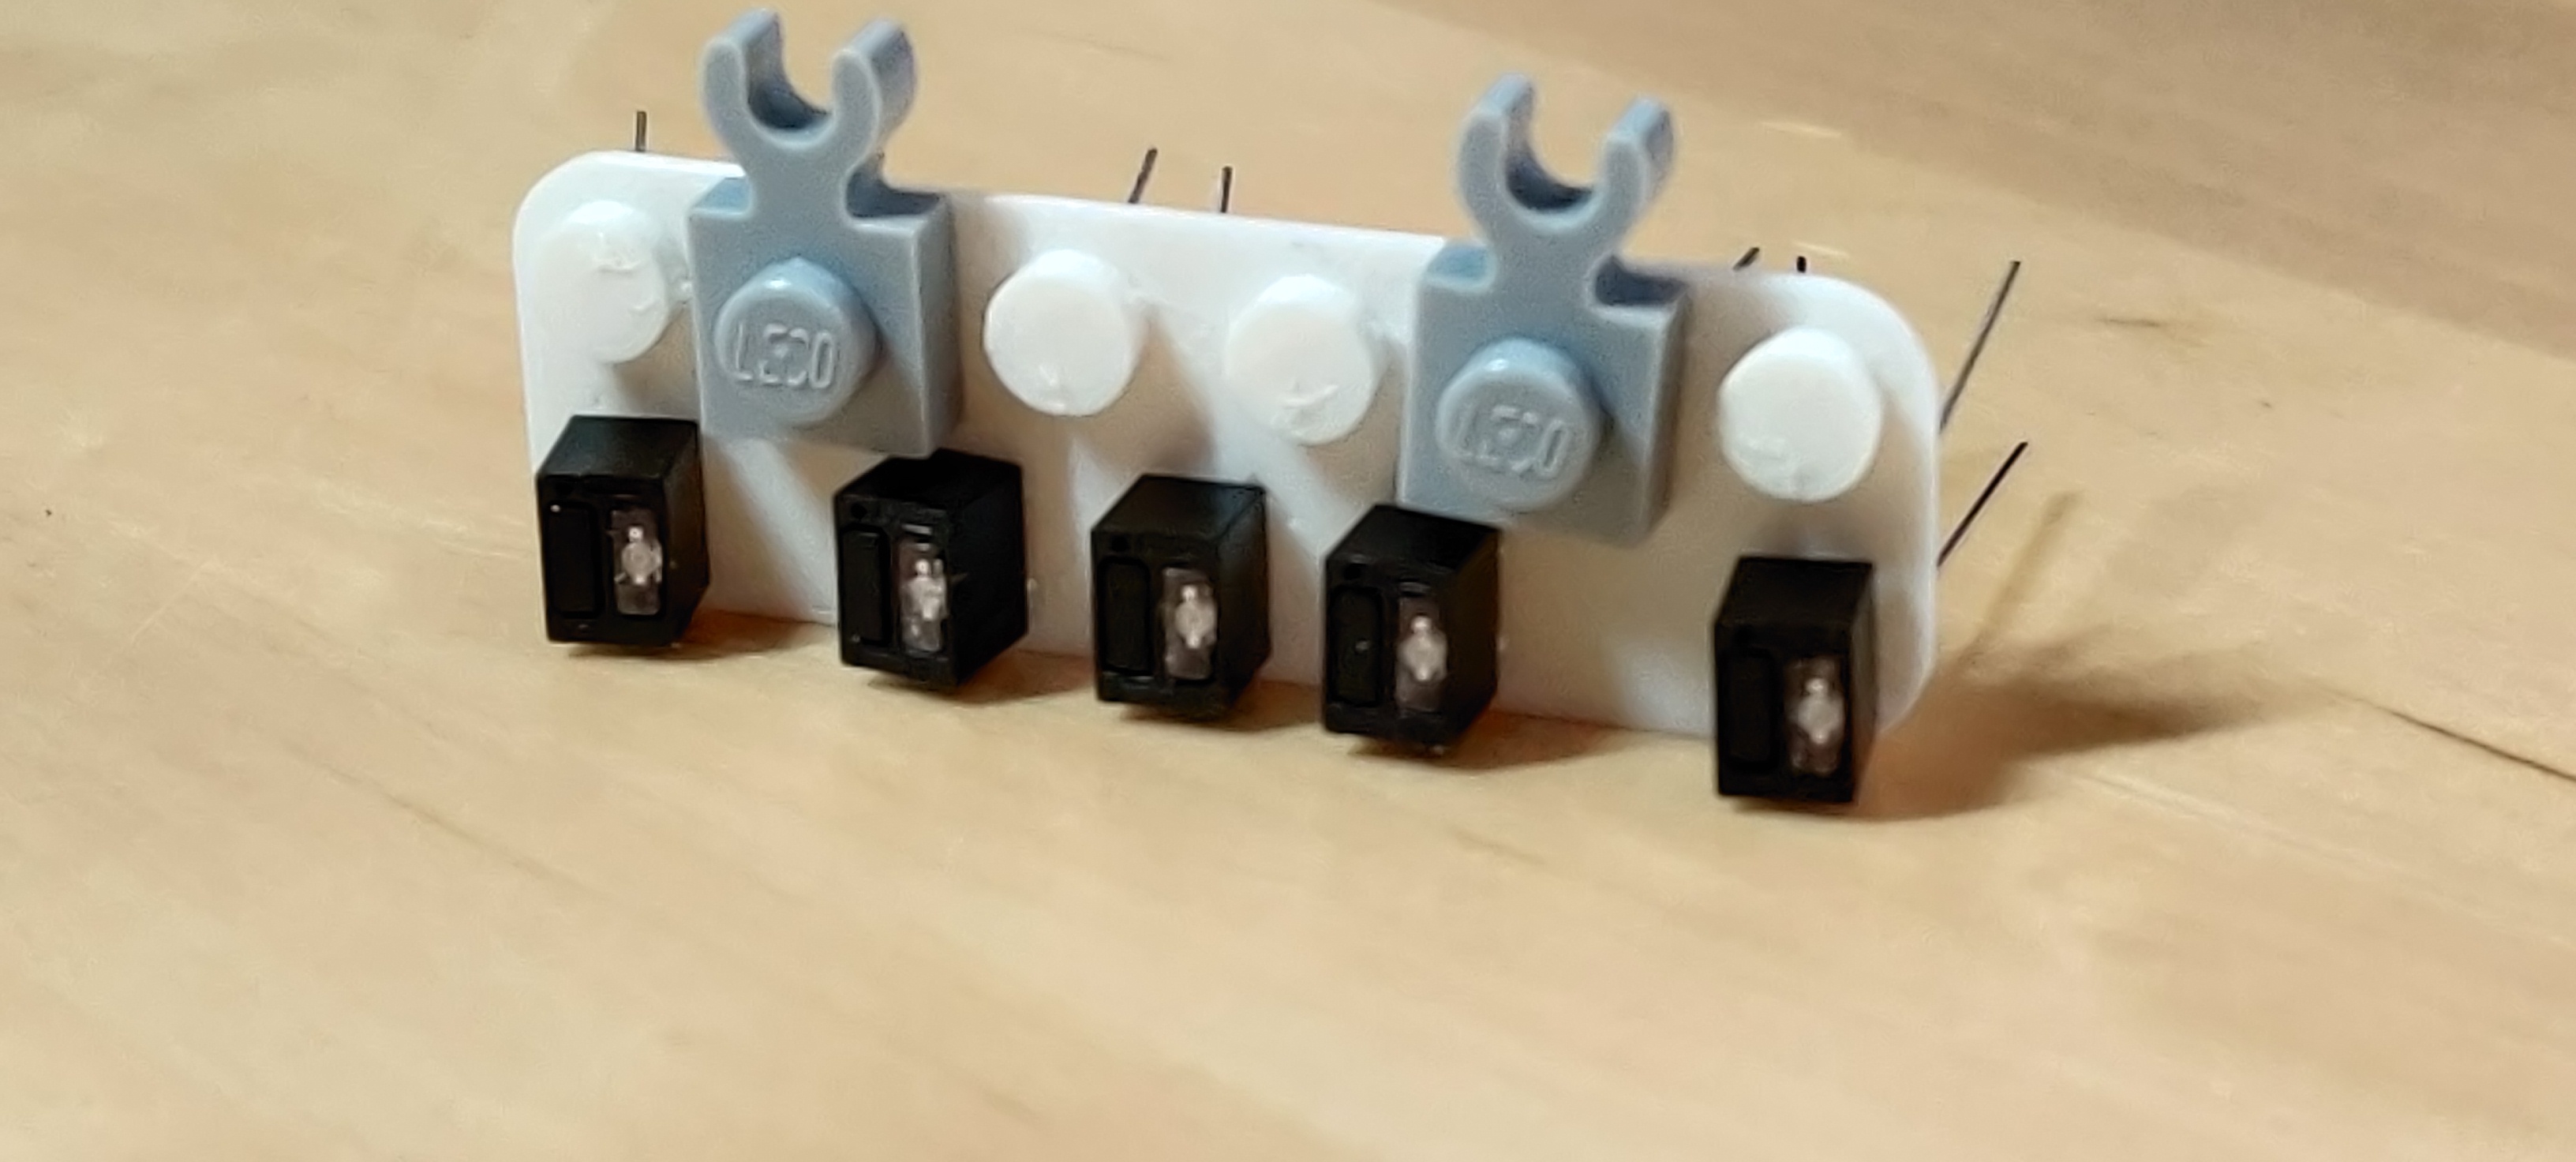 rettangolo di plastica bianca prodotto da una stampante 3D,
di dimensioni pari a 6×2 pezzi Lego; ci sono pispoli di
dimensione standard su uno dei lati lunghi, con 2 manine 1×1
attaccate; cinque sensori QRD1114 sull'altro lato